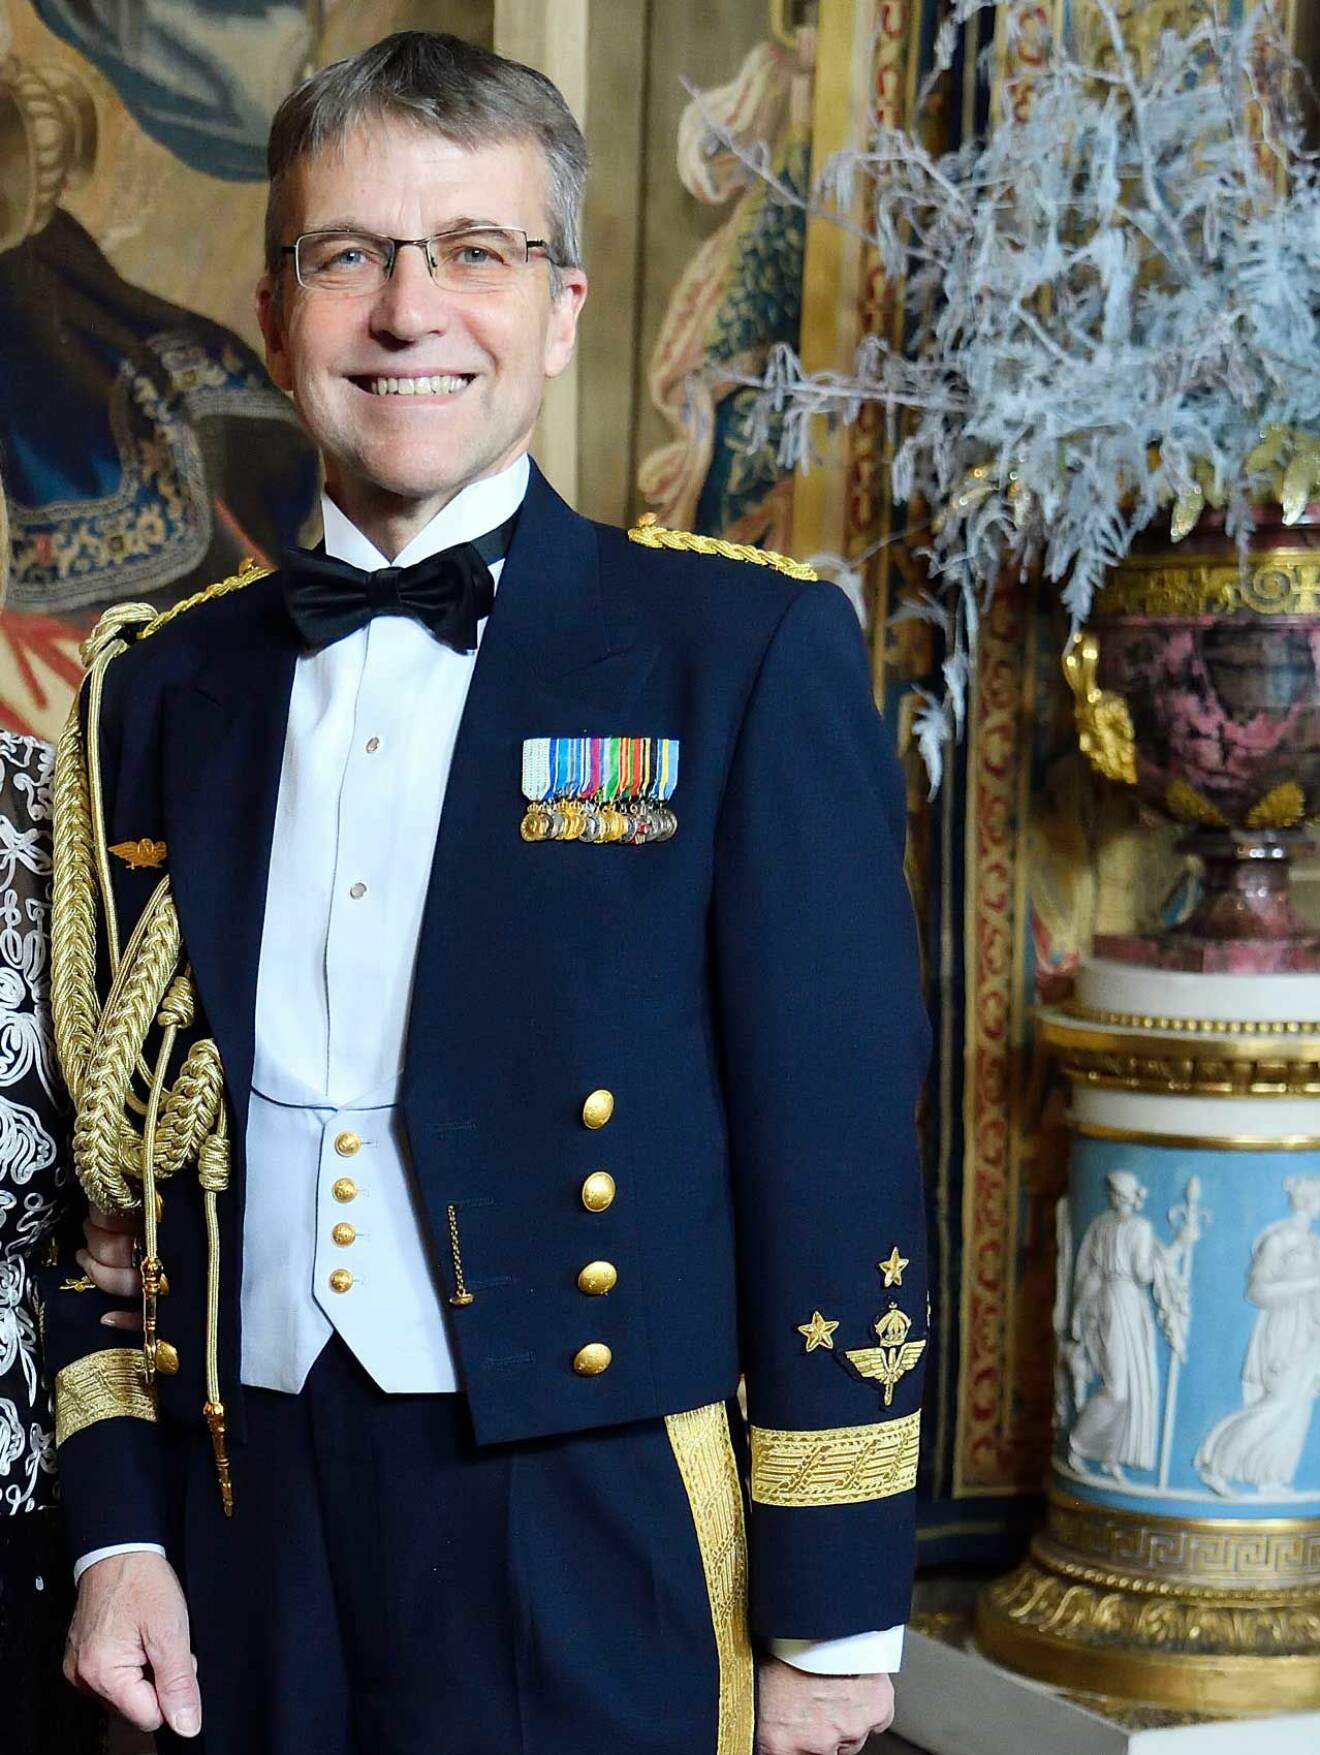 Kungens stabschef Jan Salestrand. Han har 40 år i Försvarsmakten bakom sig. Han har tidigare varit chef för Högkvarteret och Försvarsmaktens ledningsstab, samt statssekreterare i försvarsdepartementet.